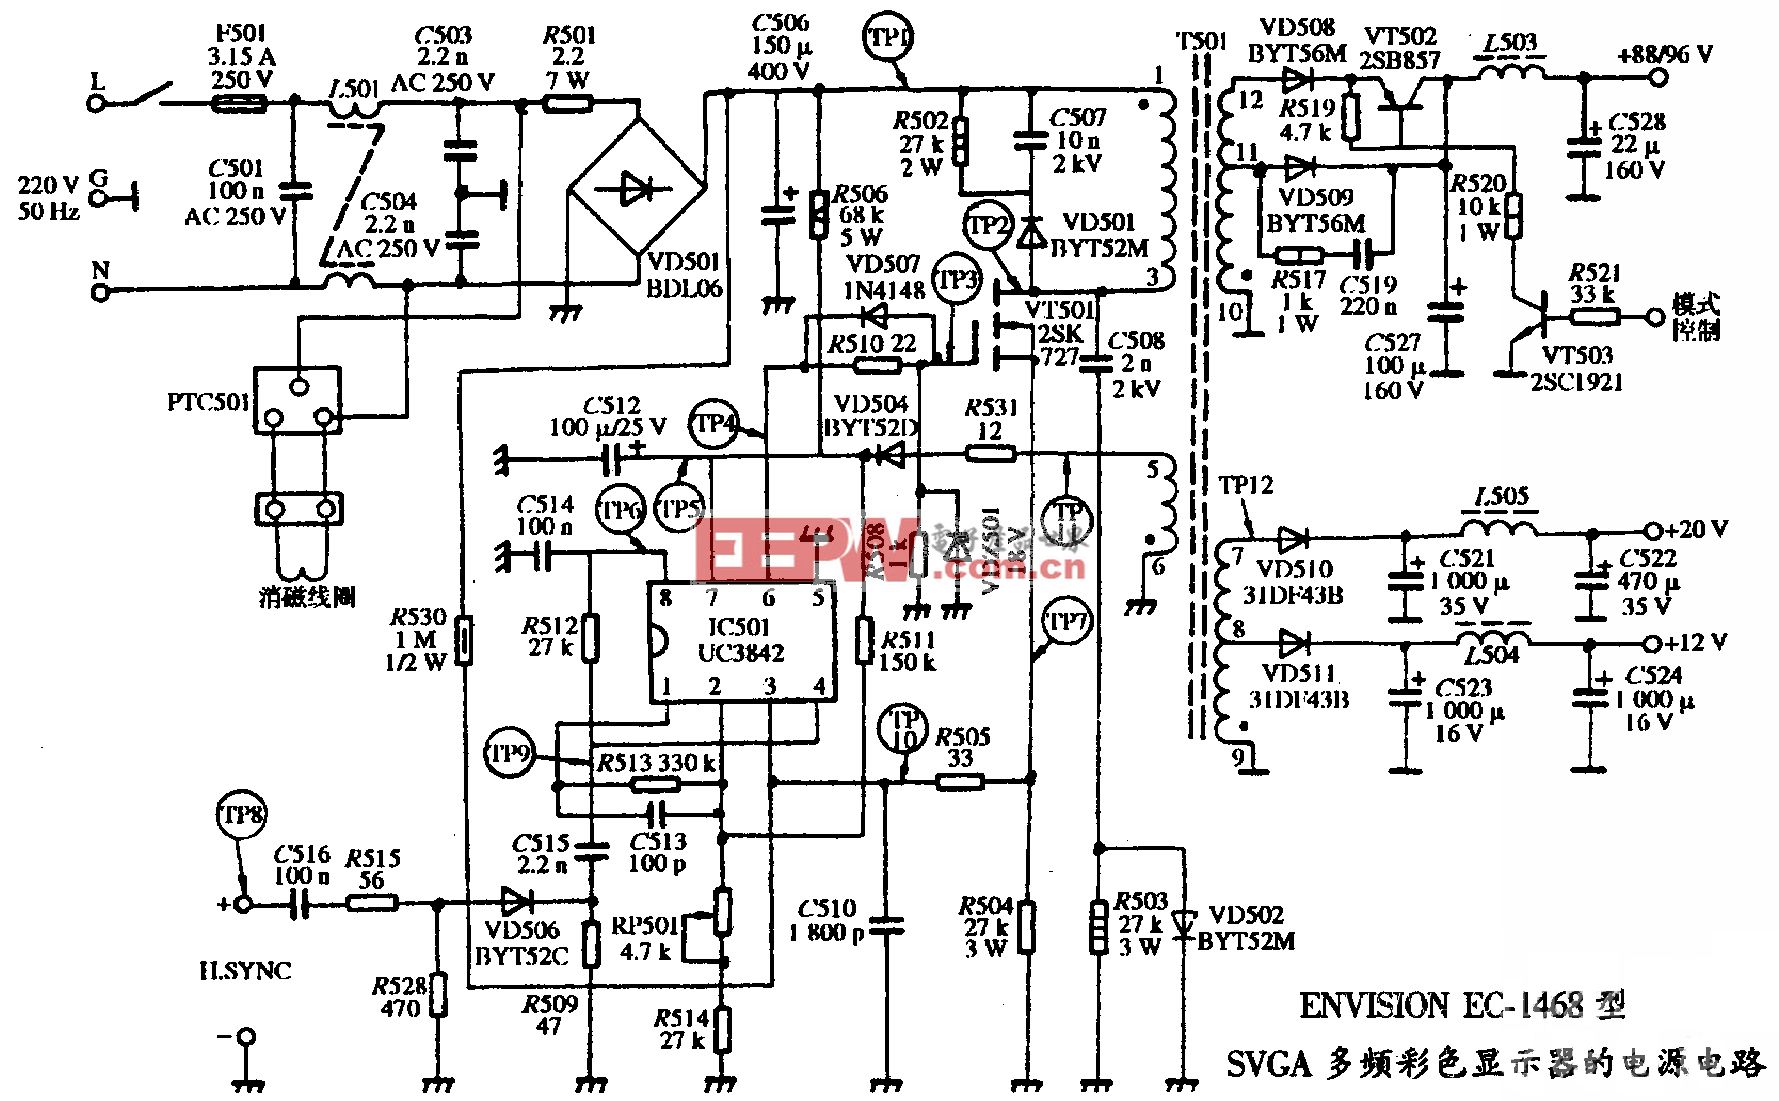 ENVISION EC-1468型SVGA多频彩色显示器的电源电路图